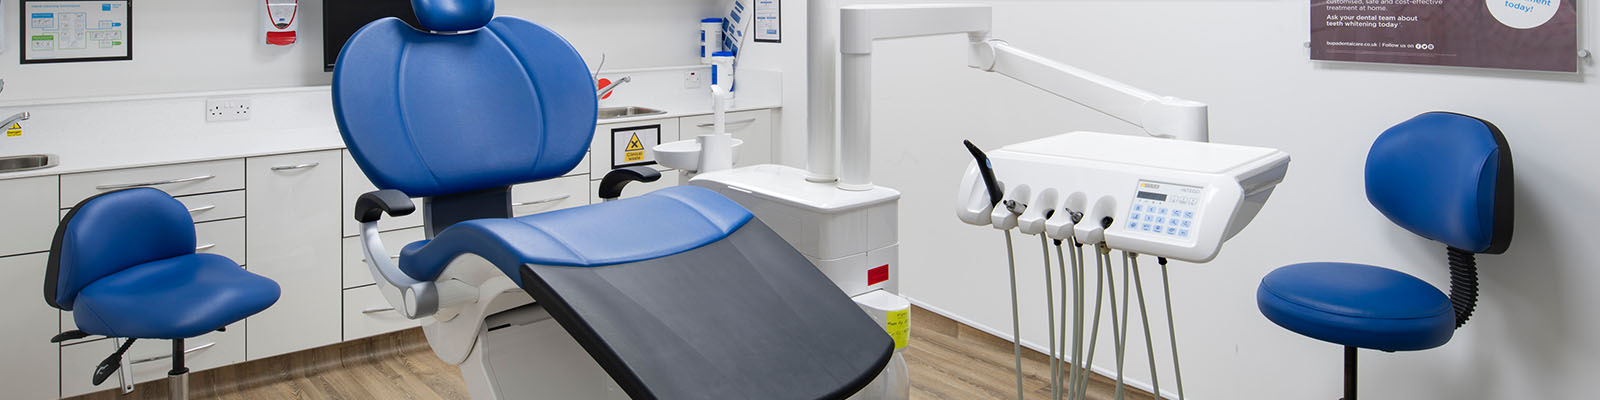 تکنسین و تعمیرکار تجهیزات دندانپزشکی